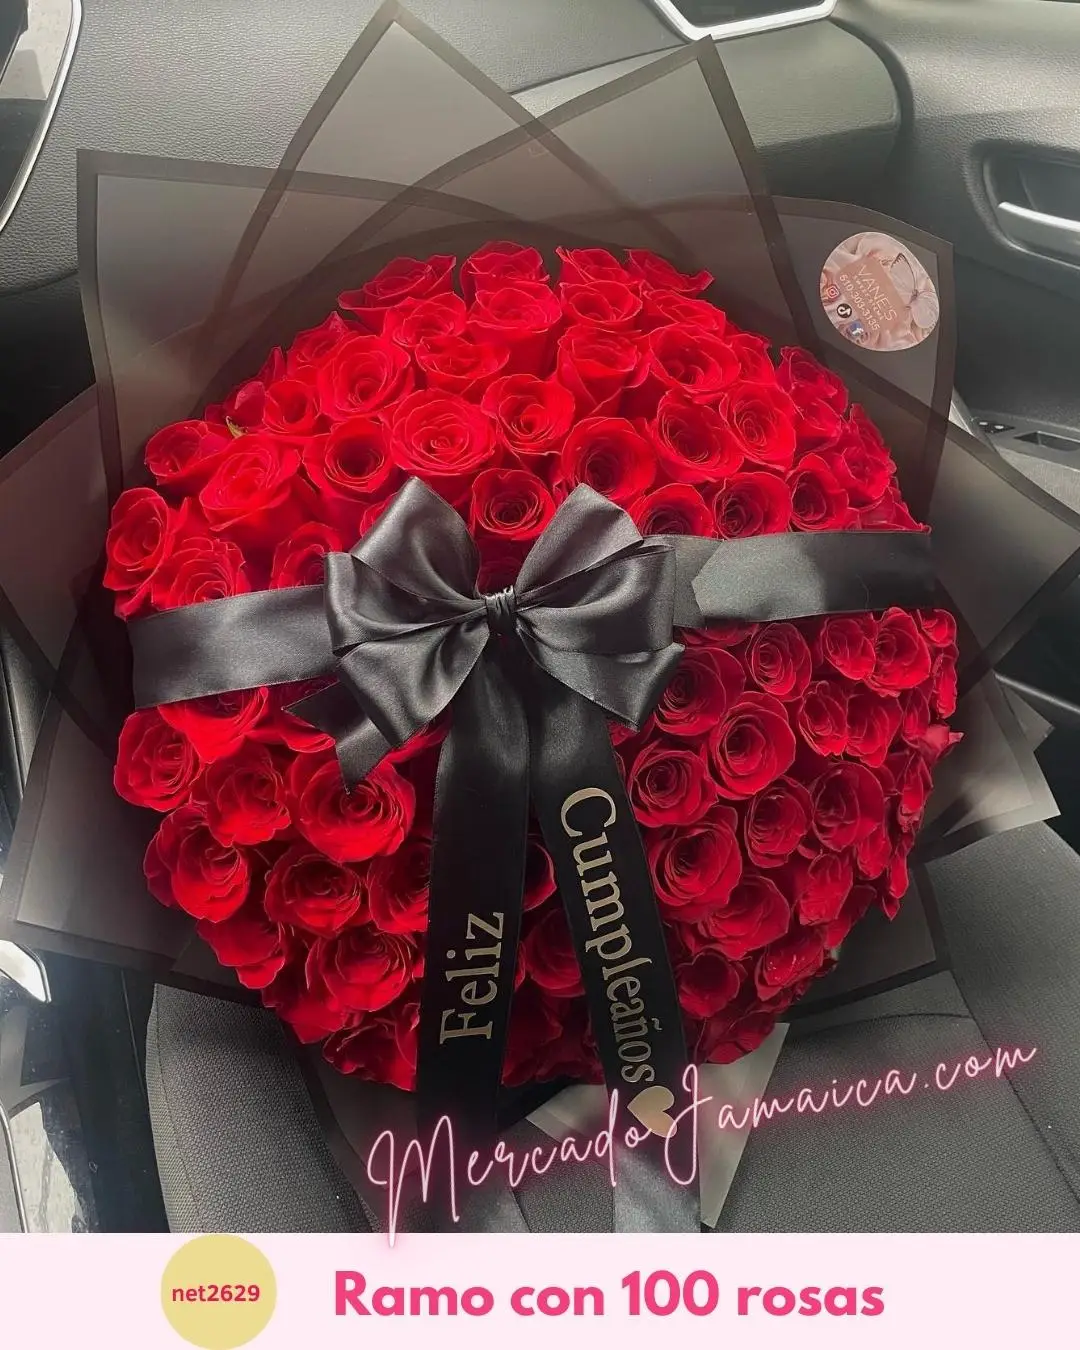 Ramo con rosas de amor y compromiso duradero: un regalo que simboliza un compromiso de amor que dura para siempre